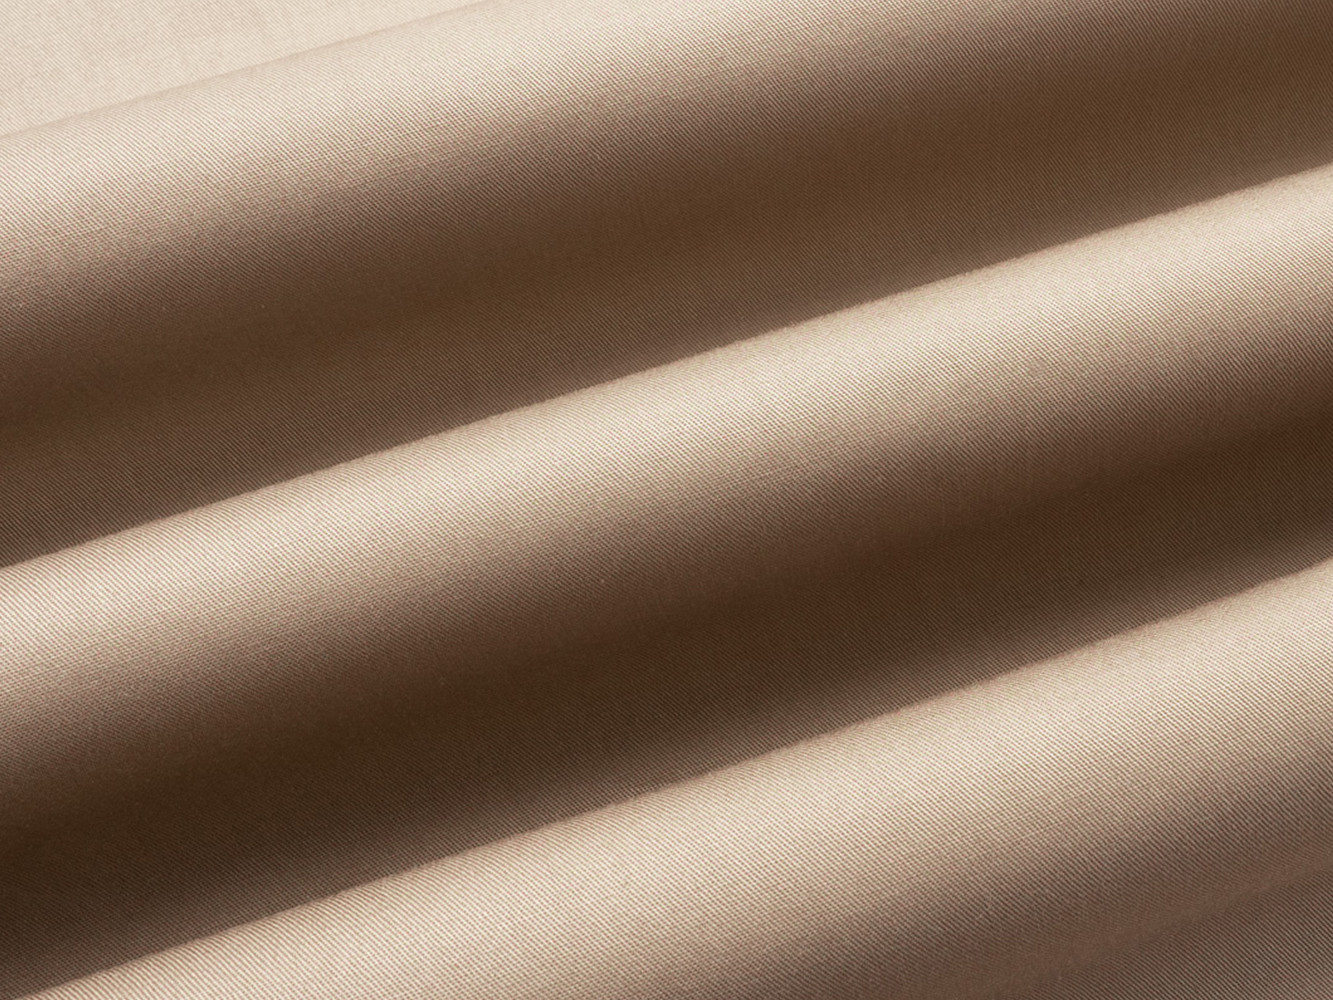 Простыня  Моноспейс бежевый на резинке Бежевый, сатин, 1400 х 2000 х 230 мм от Первый Мебельный